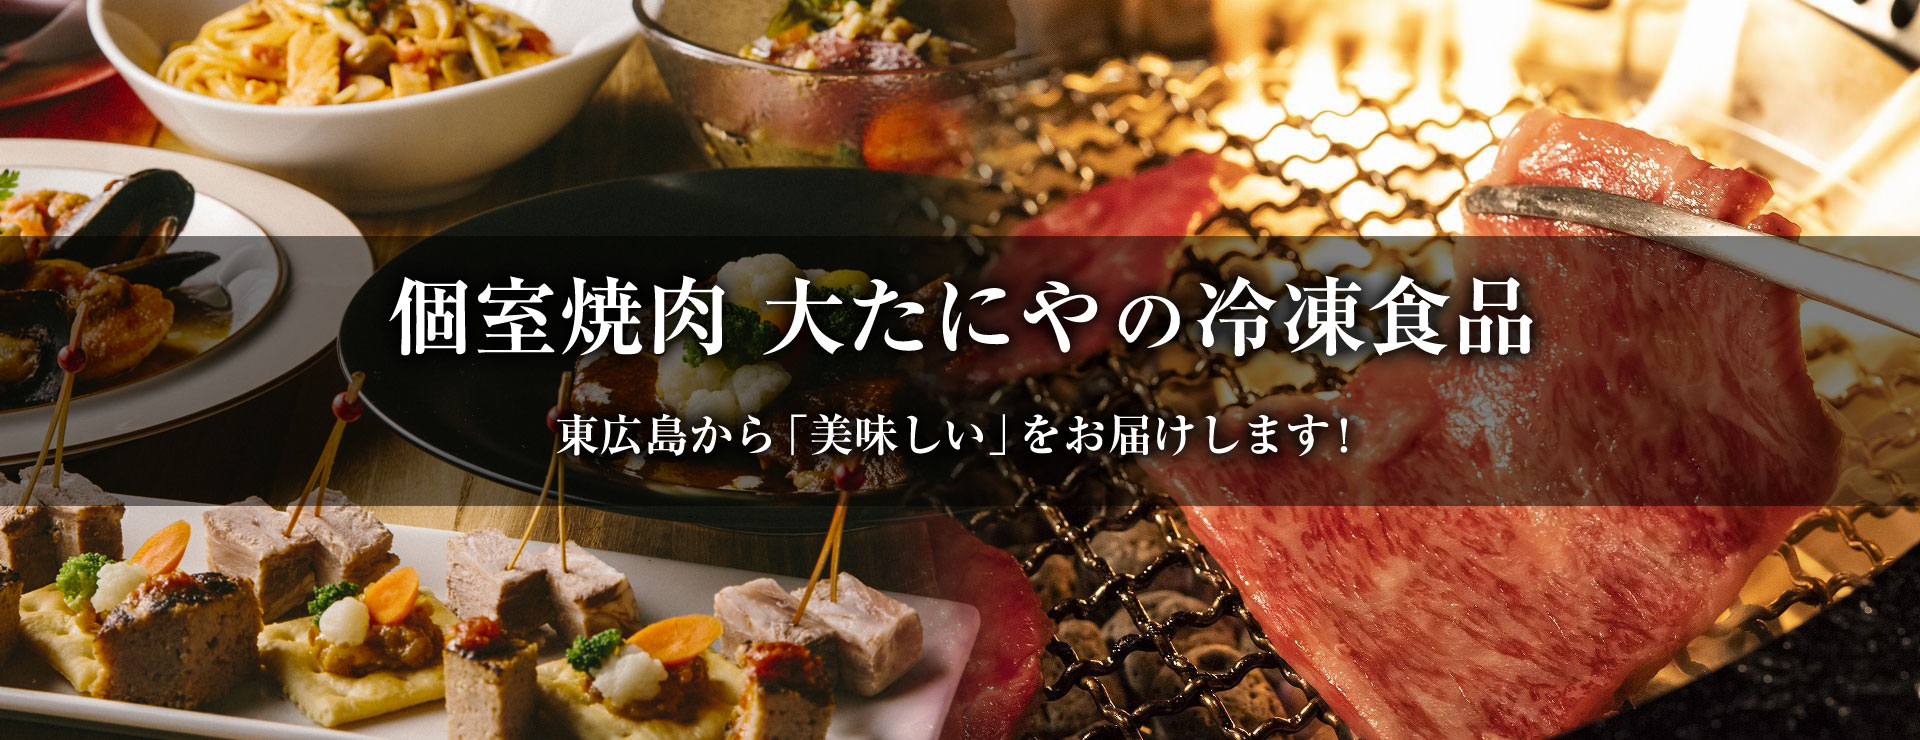 個室焼肉 大たにやの冷凍食品 東広島から 美味しい をお届けします